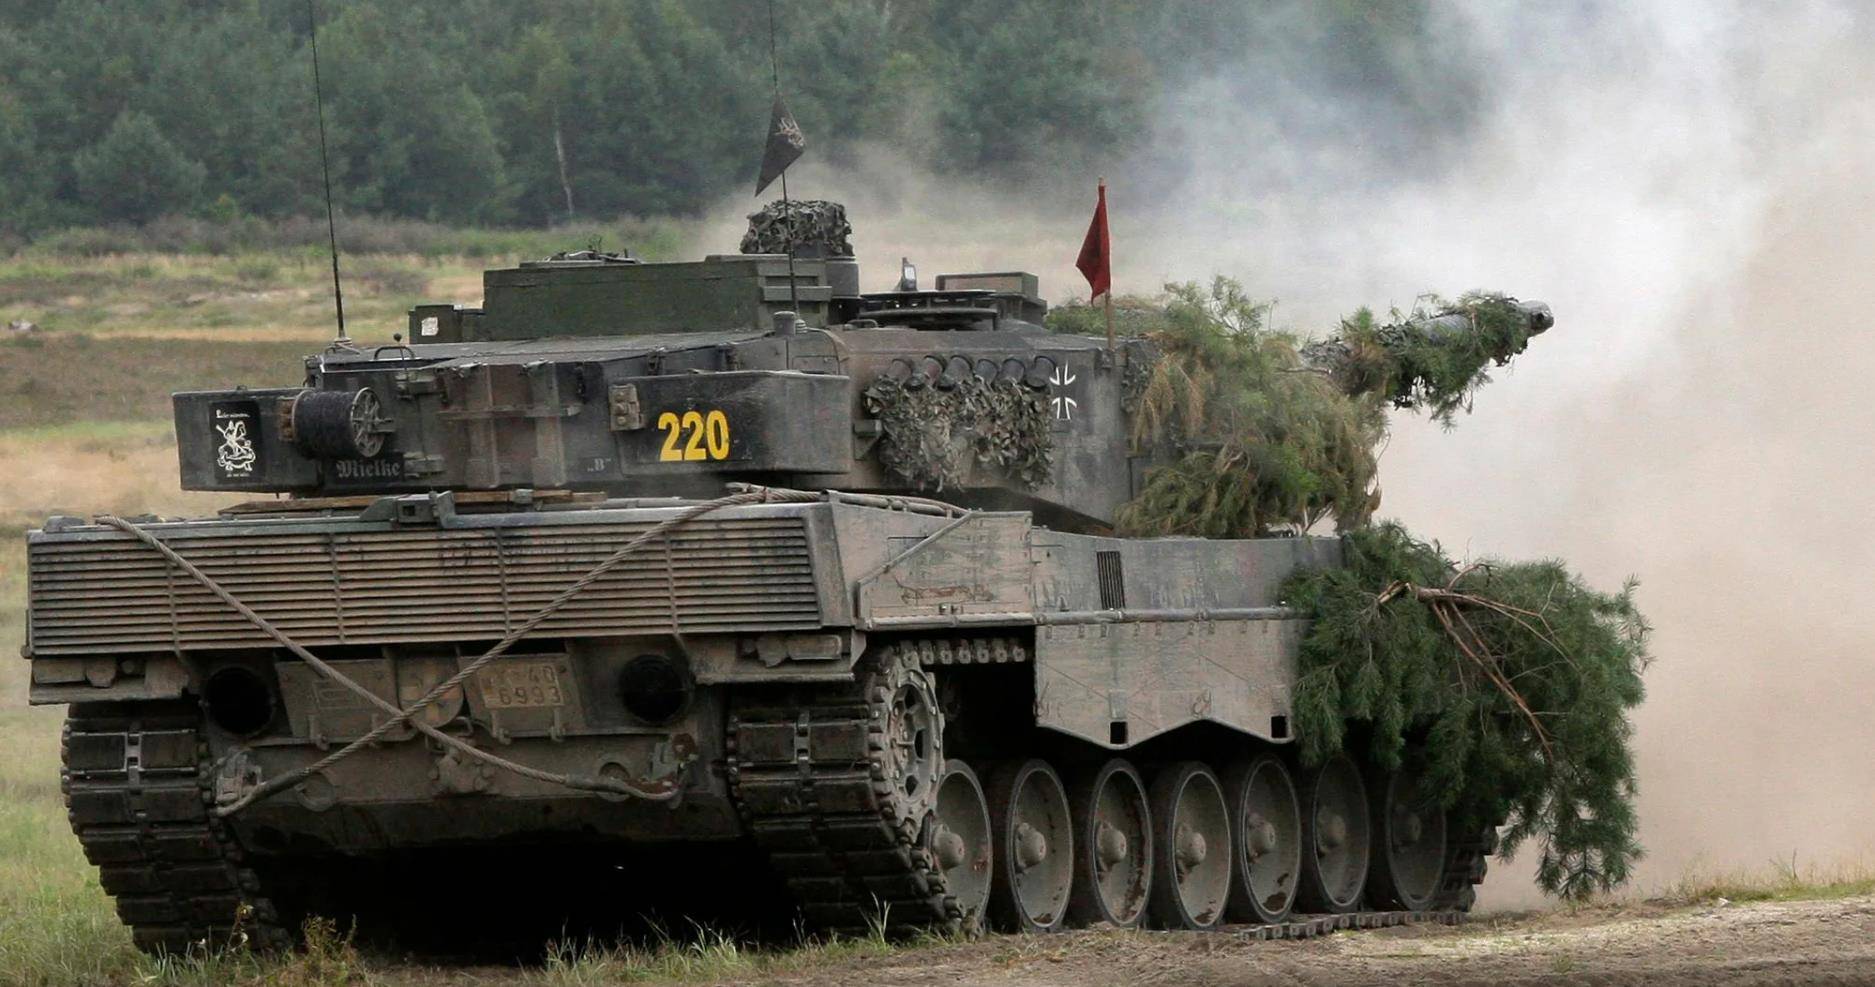 除了德国大量装备豹2主战坦克外,荷兰,瑞士等欧洲国家也不同程度采购